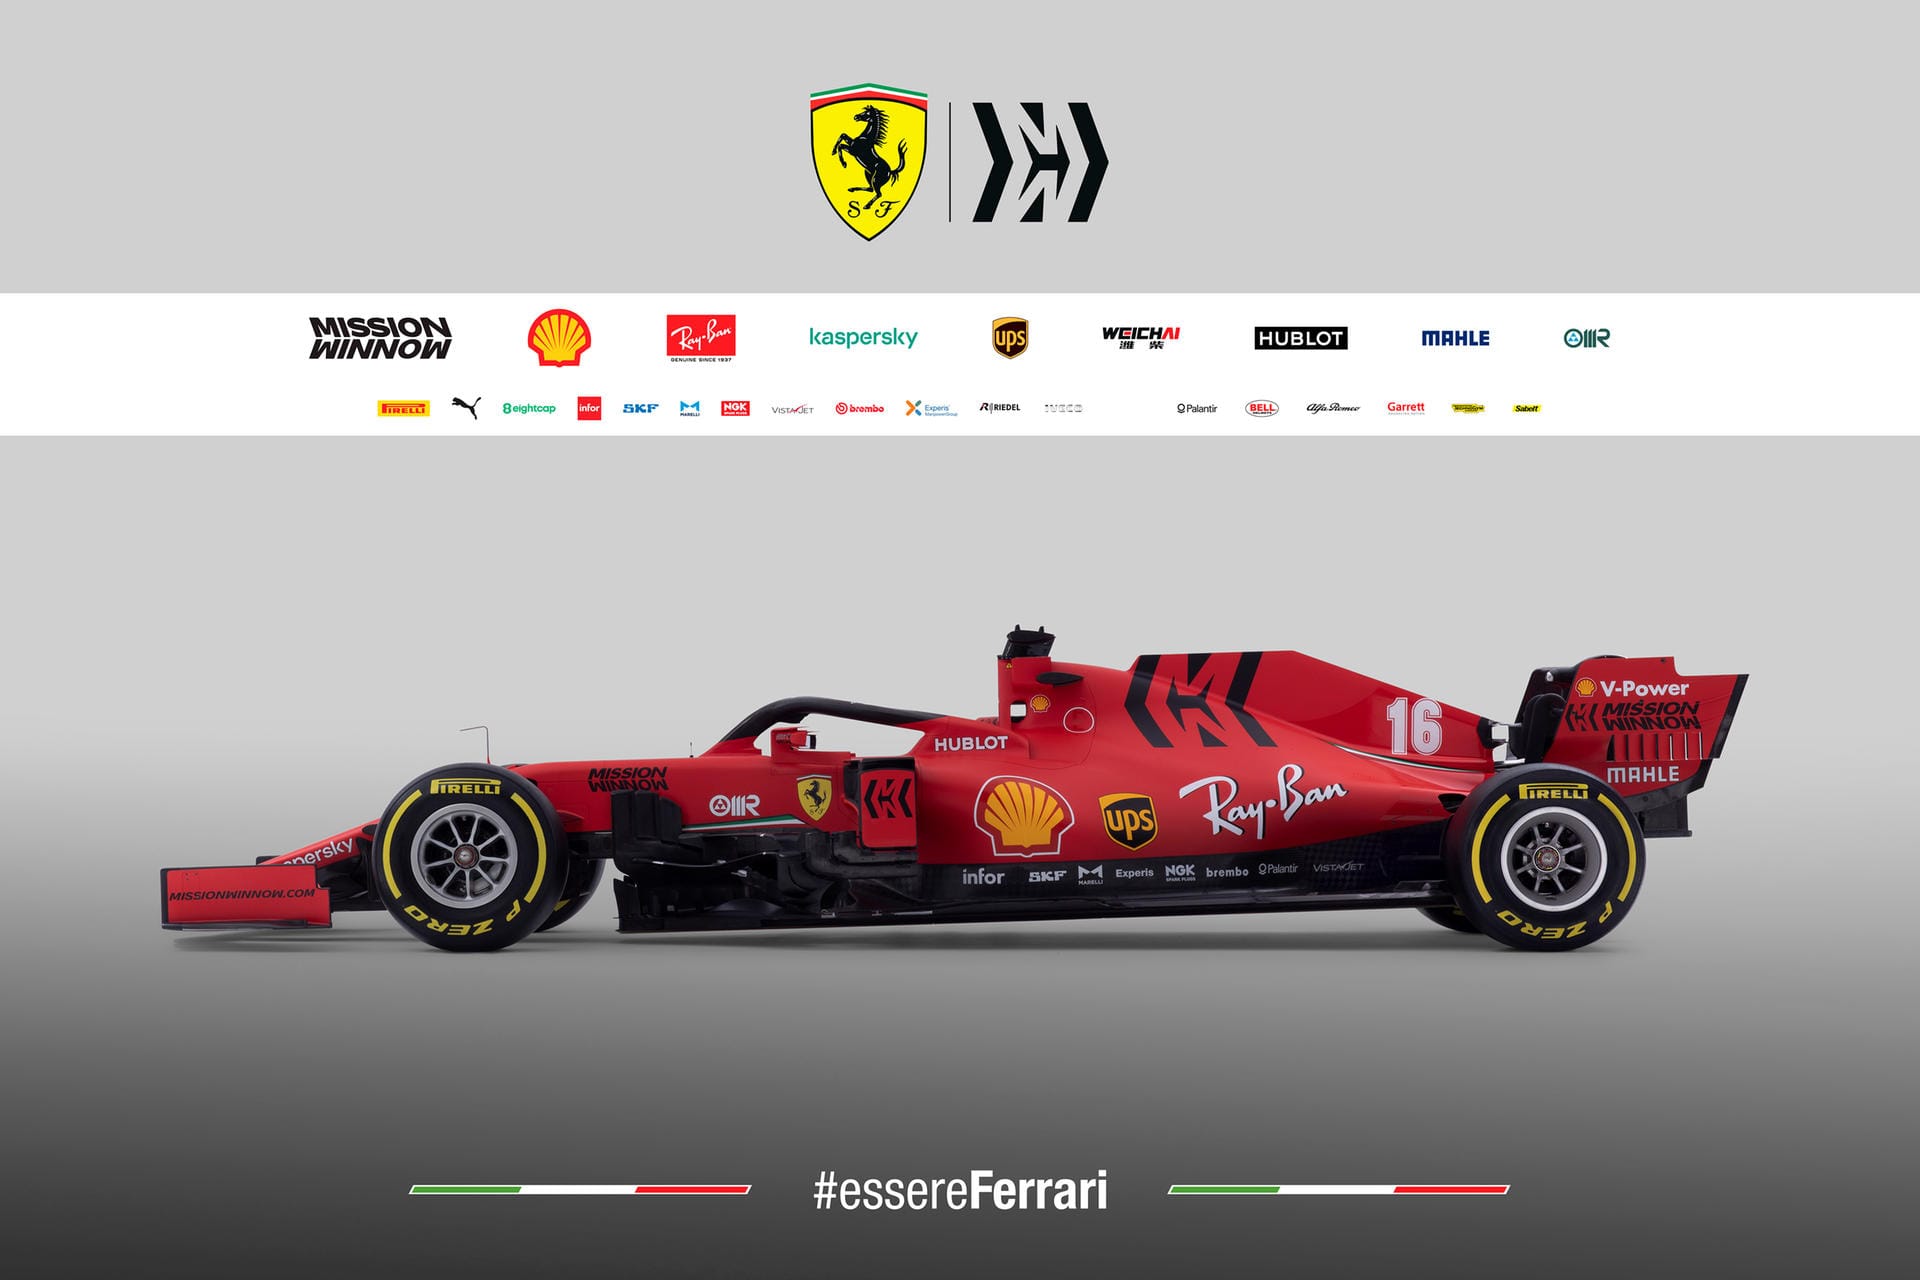 Der neue Ferrari trägt den Namen SF1000. Diesen hat der neue Wagen einem Jubiläum zu verdanken. Die Bezeichnung soll auf den 1000. Grand Prix Ferraris in der Formel 1 hinweisen, der in dieser Saison eingefahren wird.